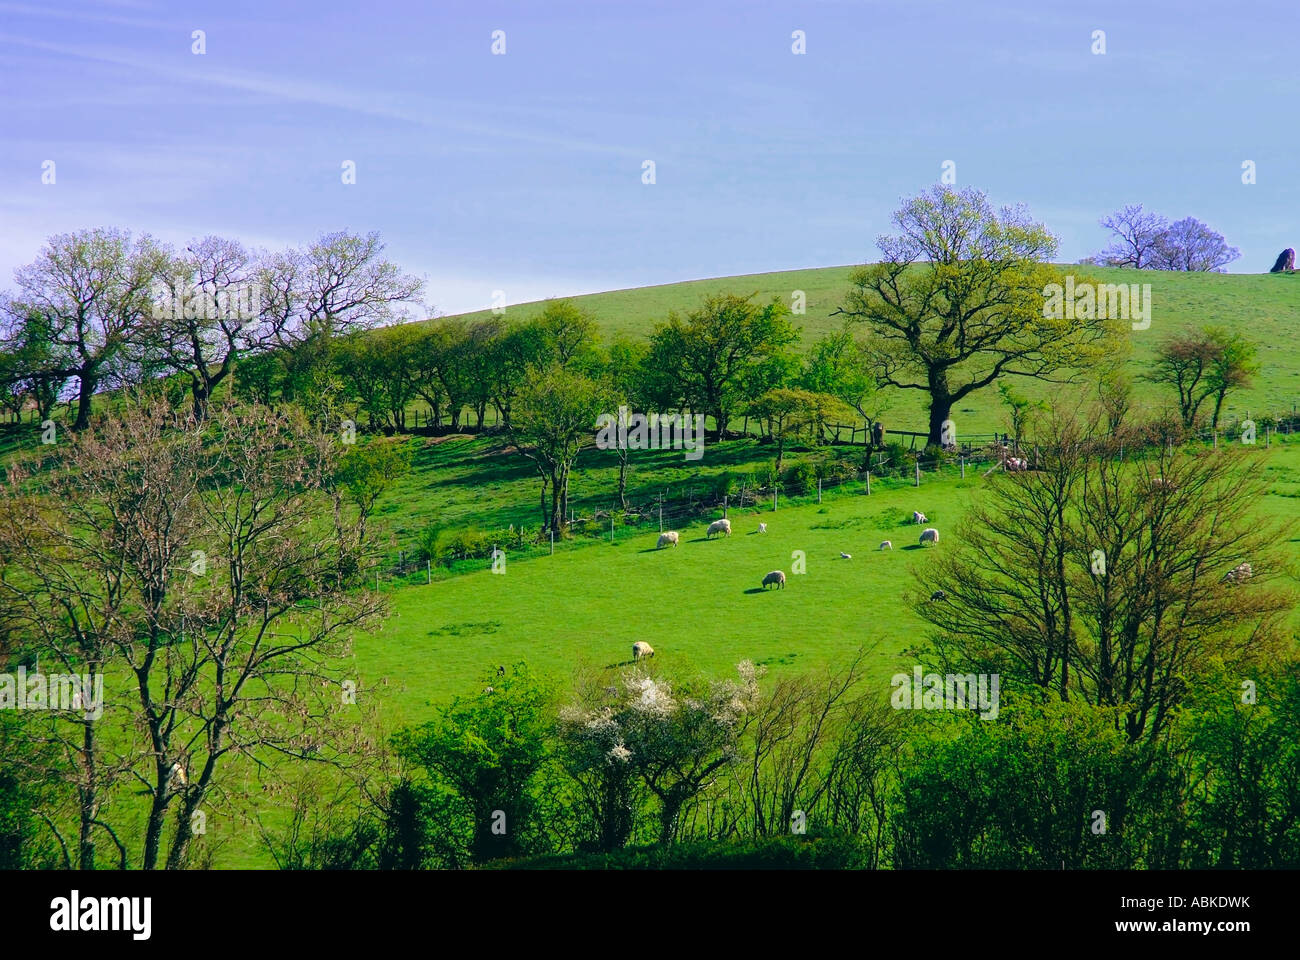 shropshire hills cardington midlands england uk Stock Photo